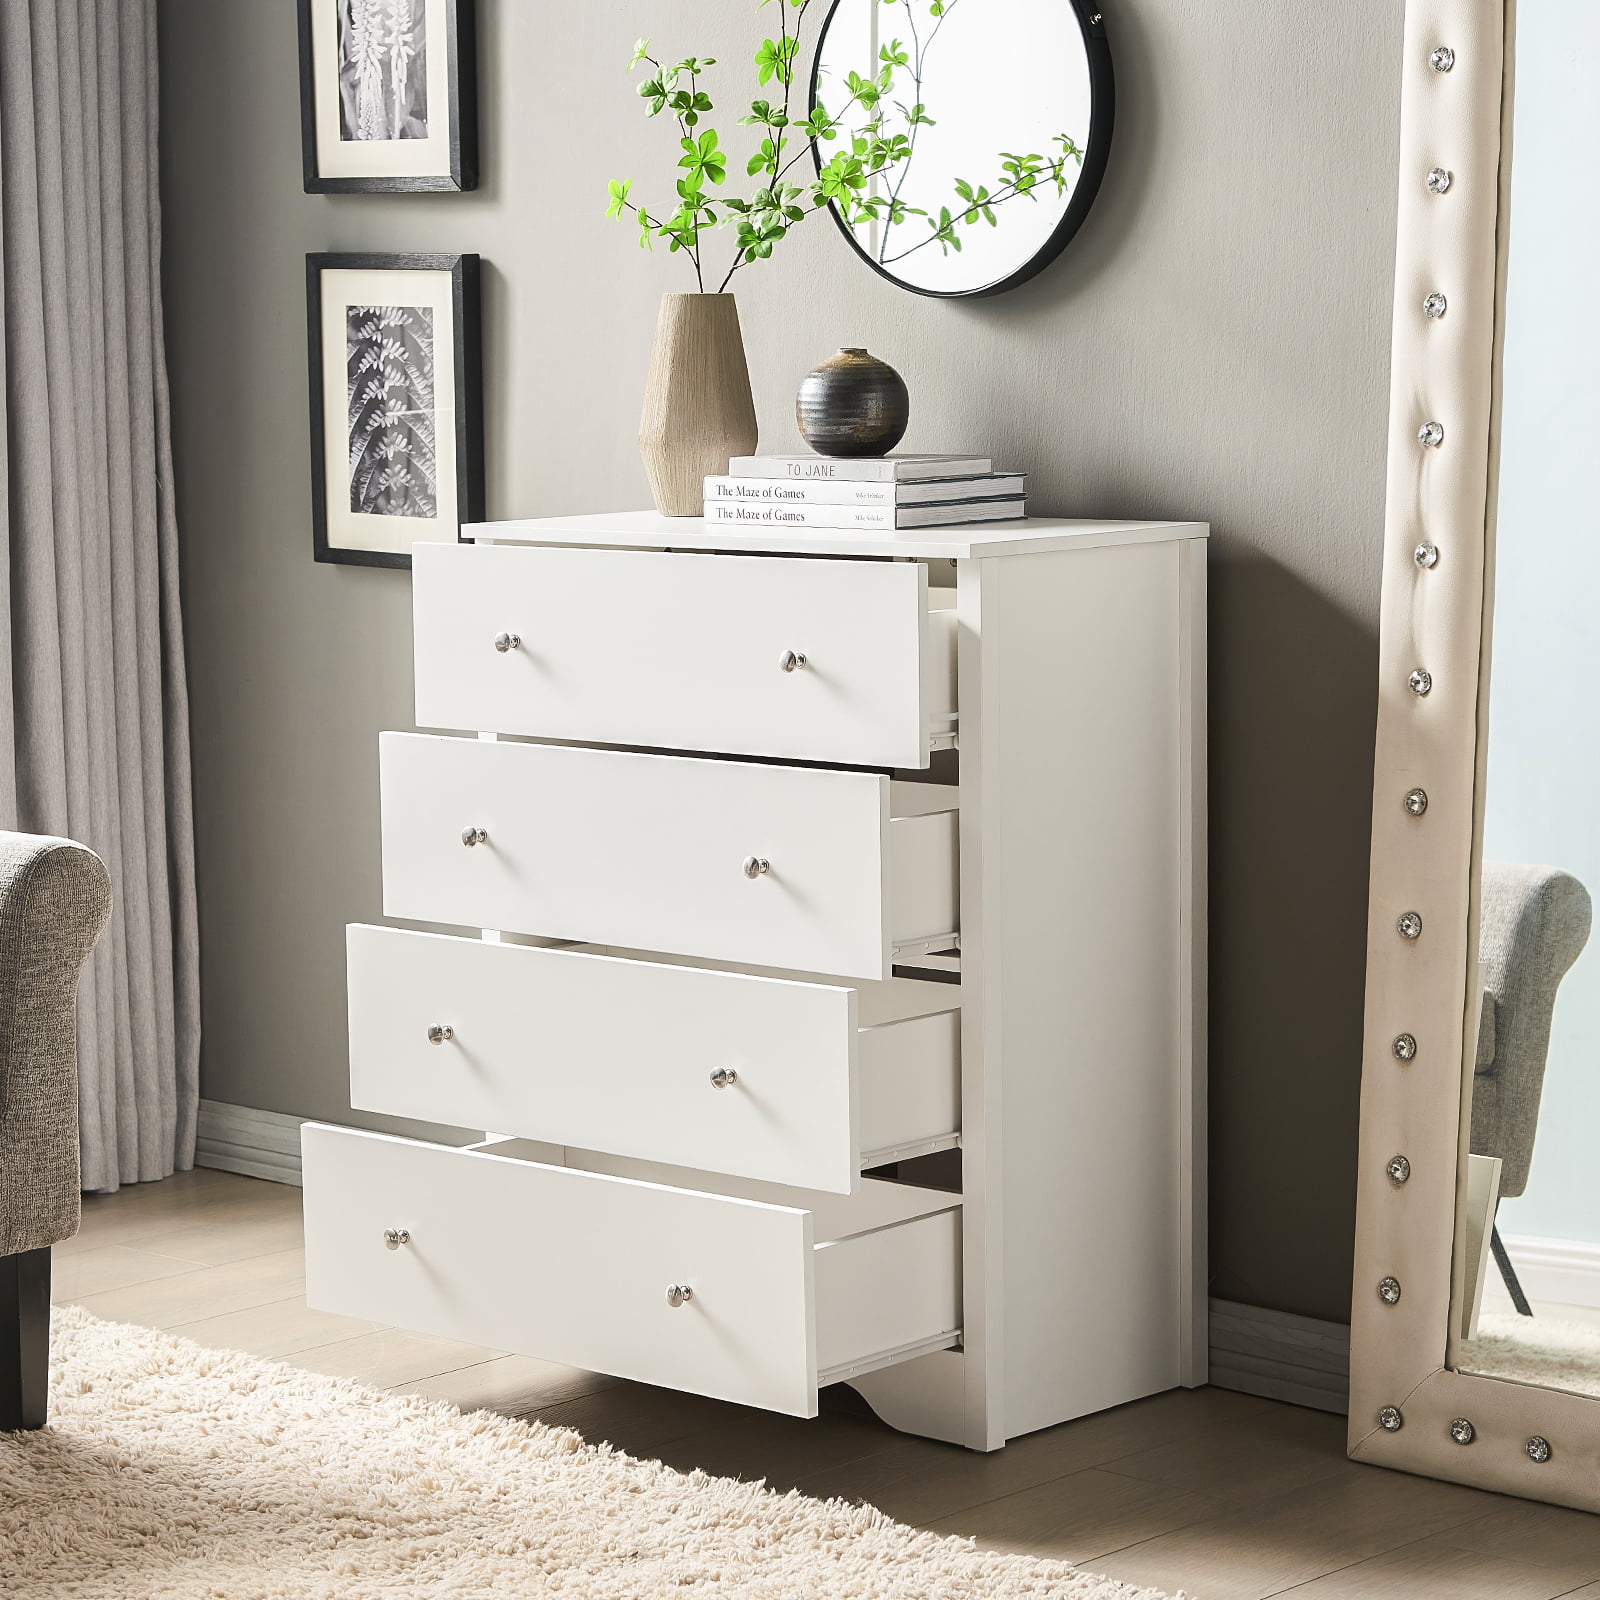 Bedroom 4 Drawer Chest Dresser Storage Cabinet Wood Furniture  Organizer White 